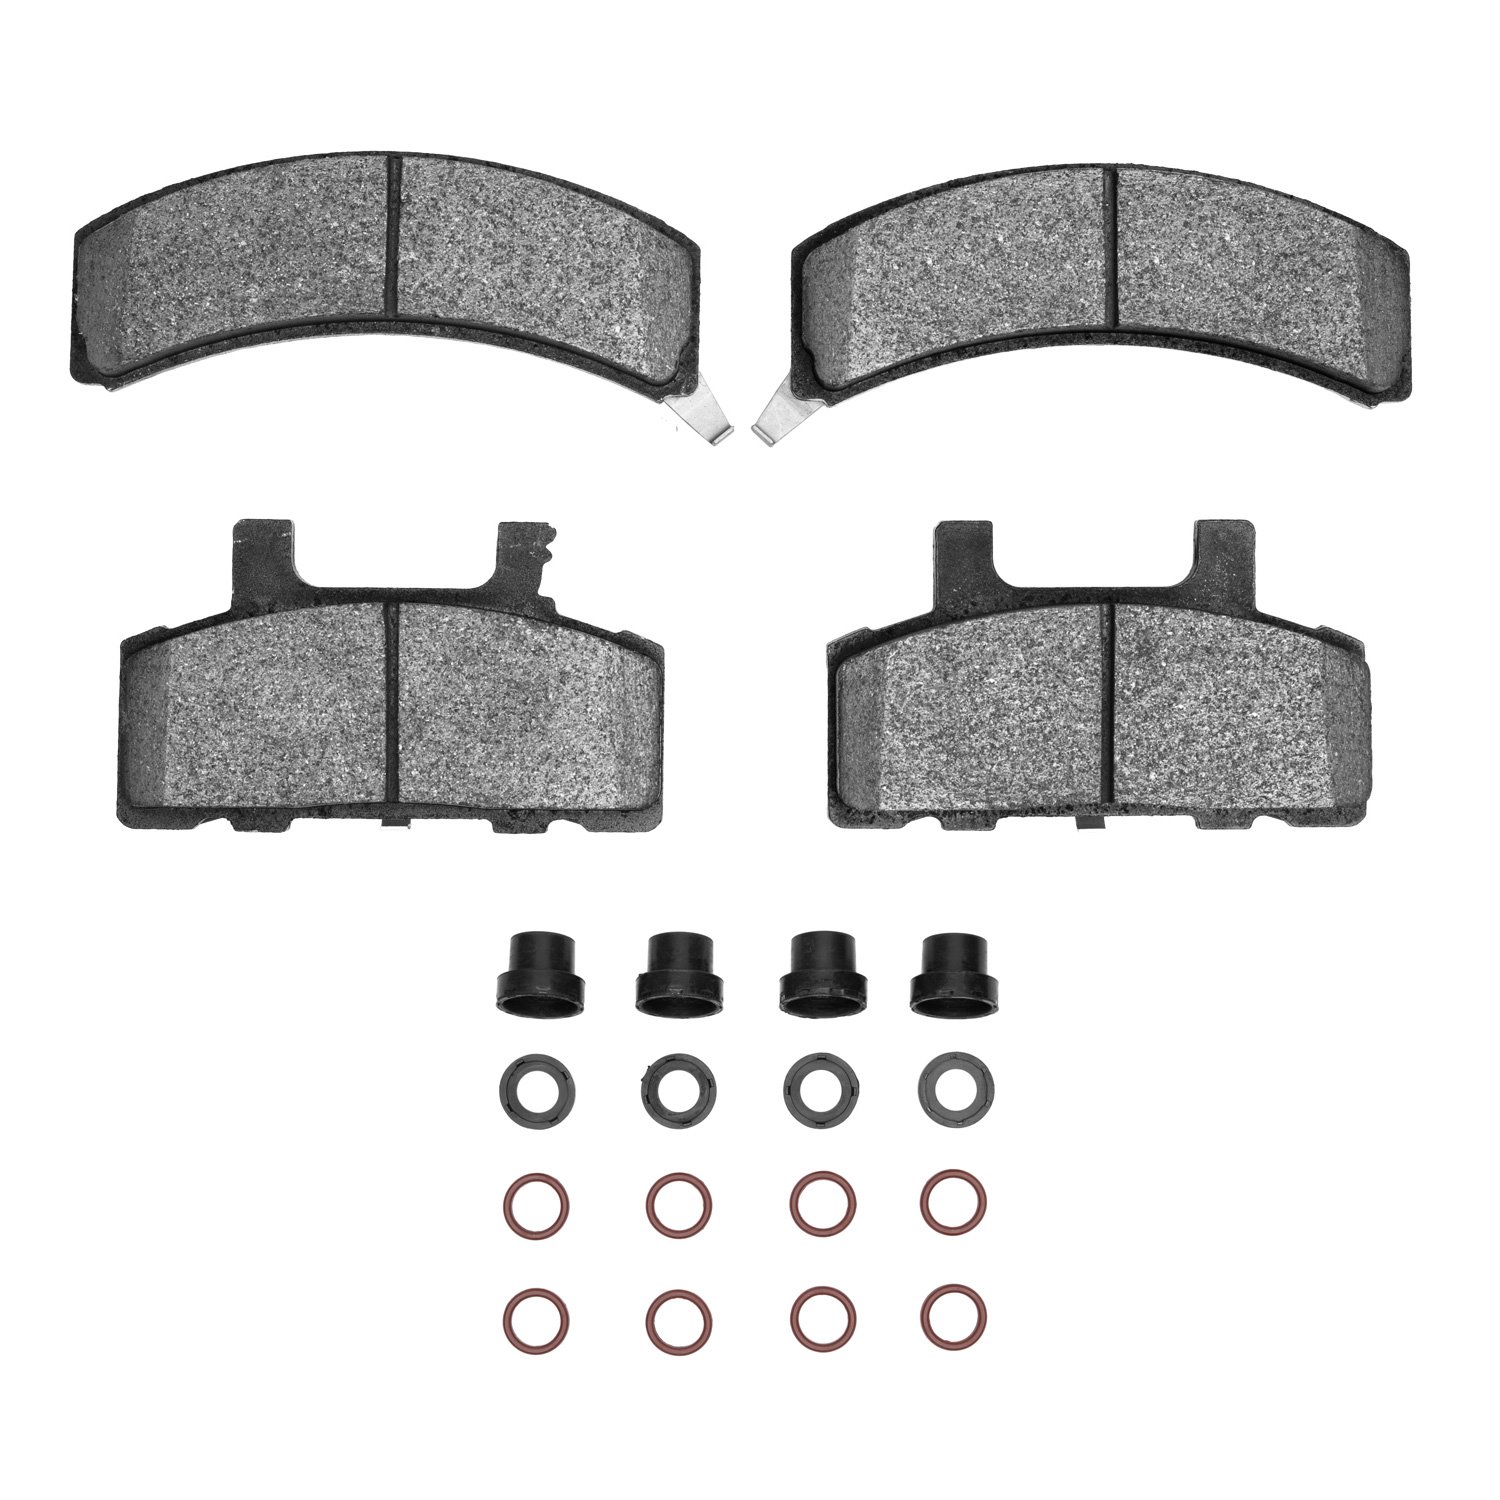 Semi-Metallic Brake Pads & Hardware Kit, 1988-1991 GM, Position: Front